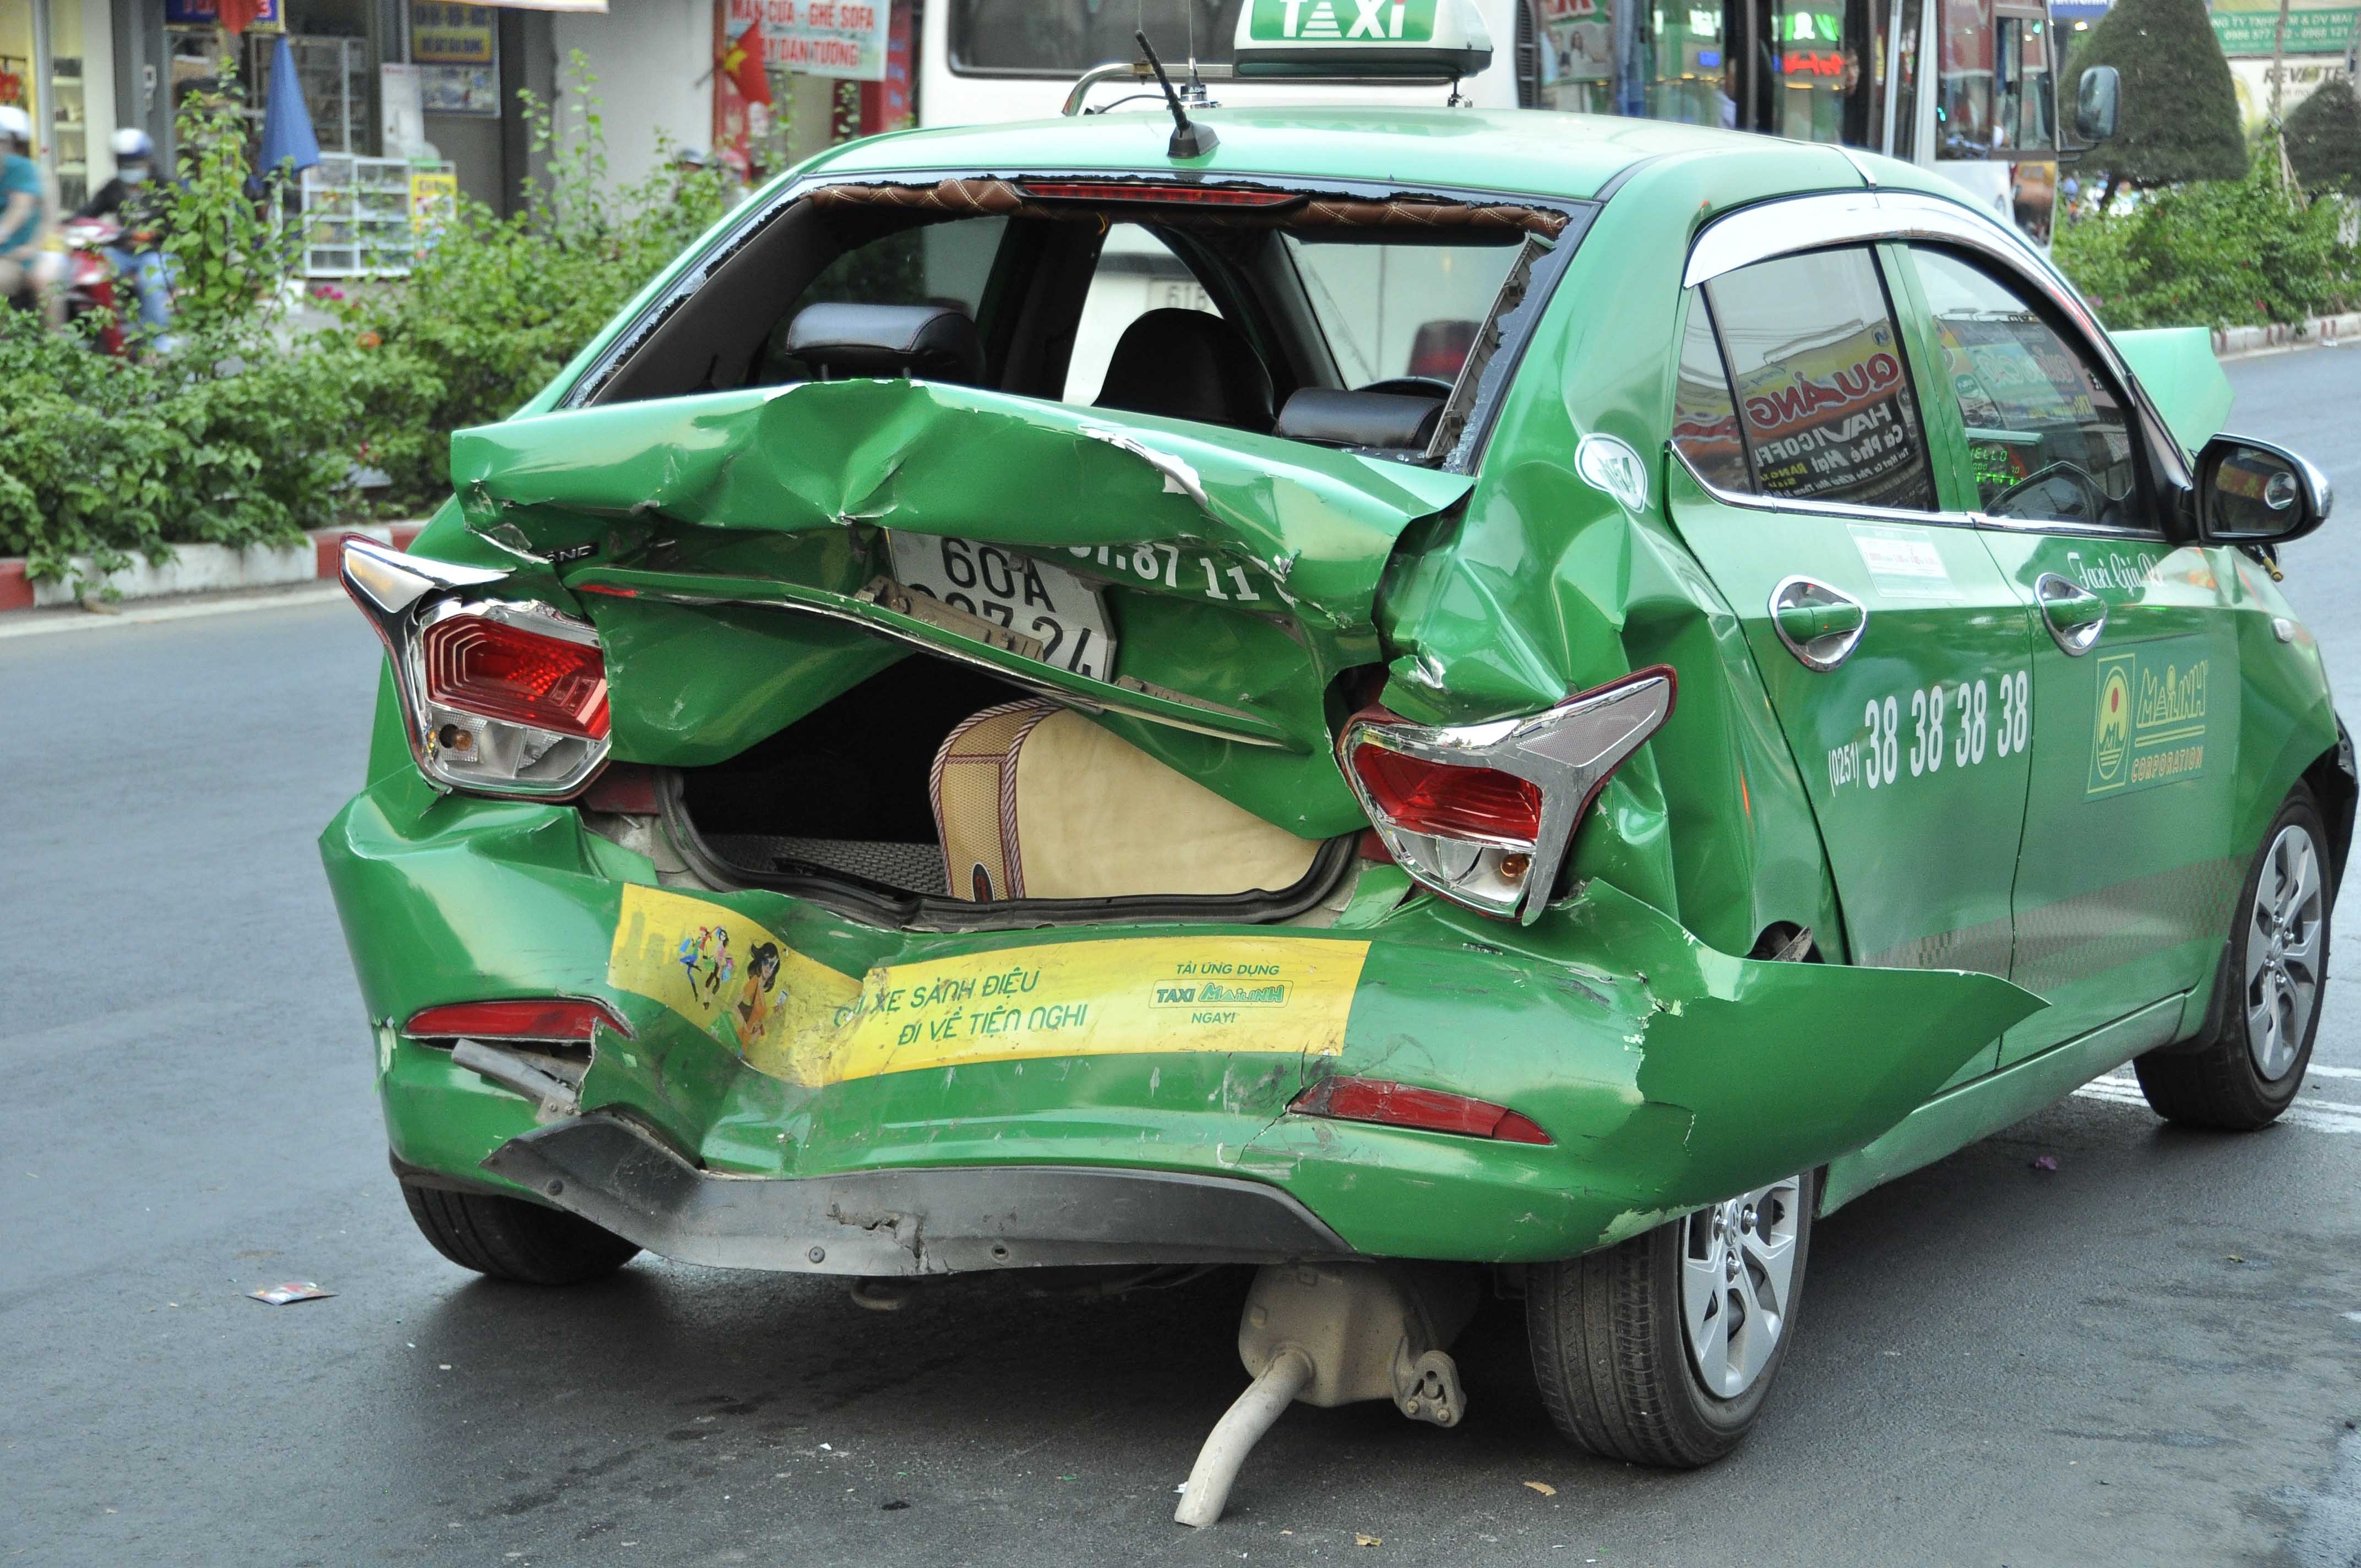 Chiếc xe taxi bị đẩy đi xa khoảng 50m dẫn đến hư hỏng nặng.